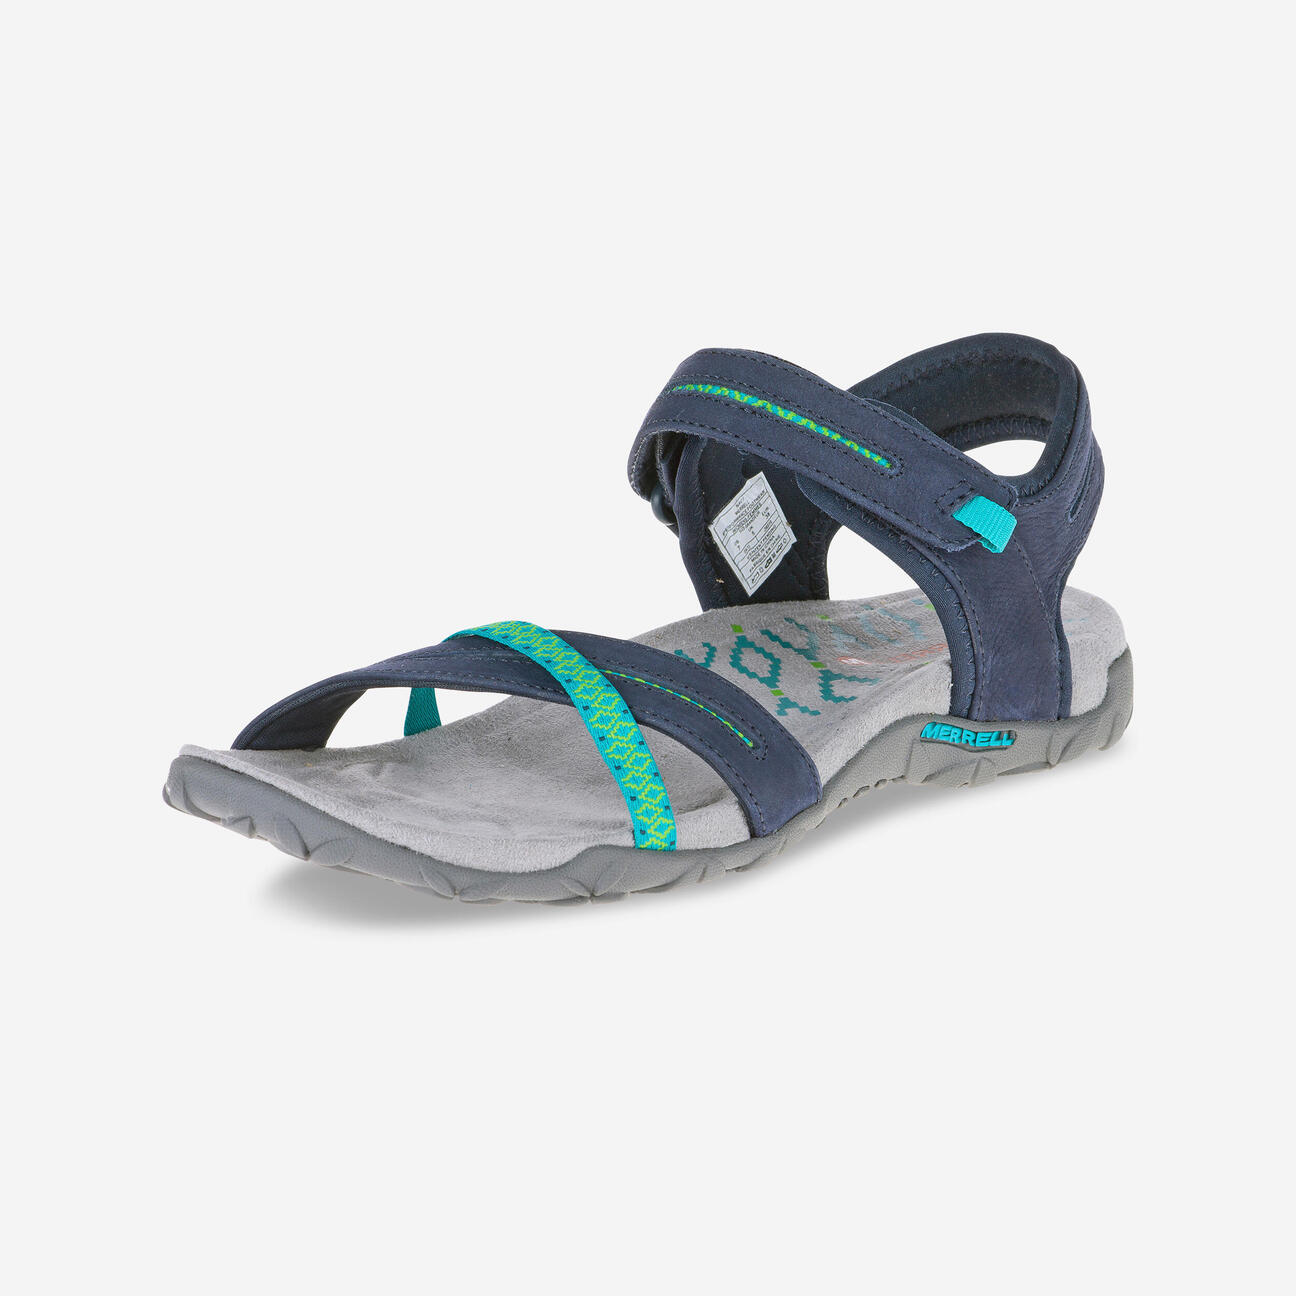 Women's hiking sandals - Terran Cross Blue Merrell - Decathlon